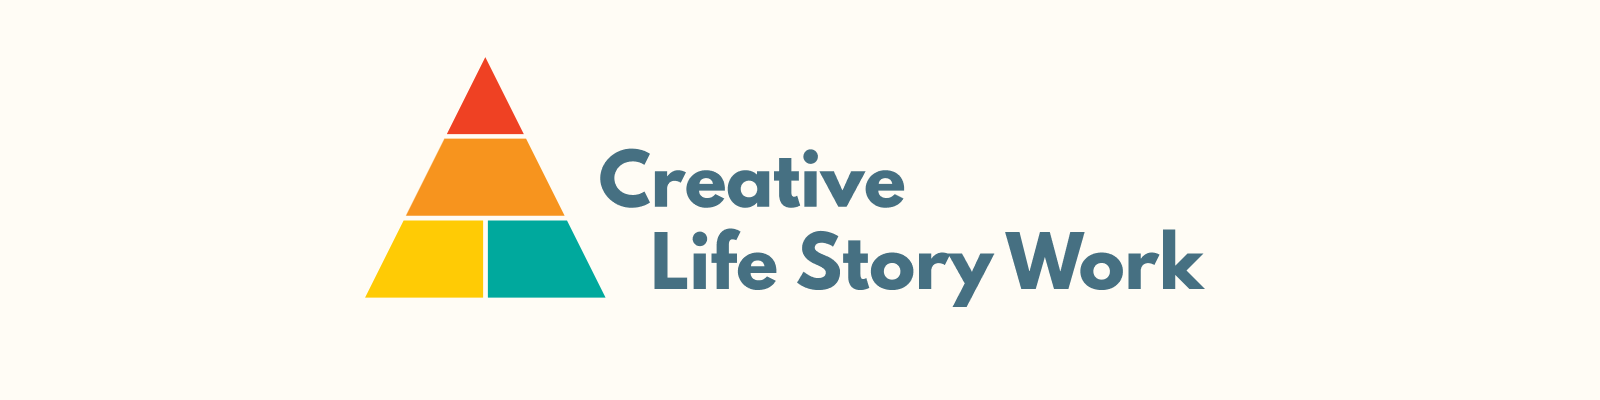 Creative life story logo